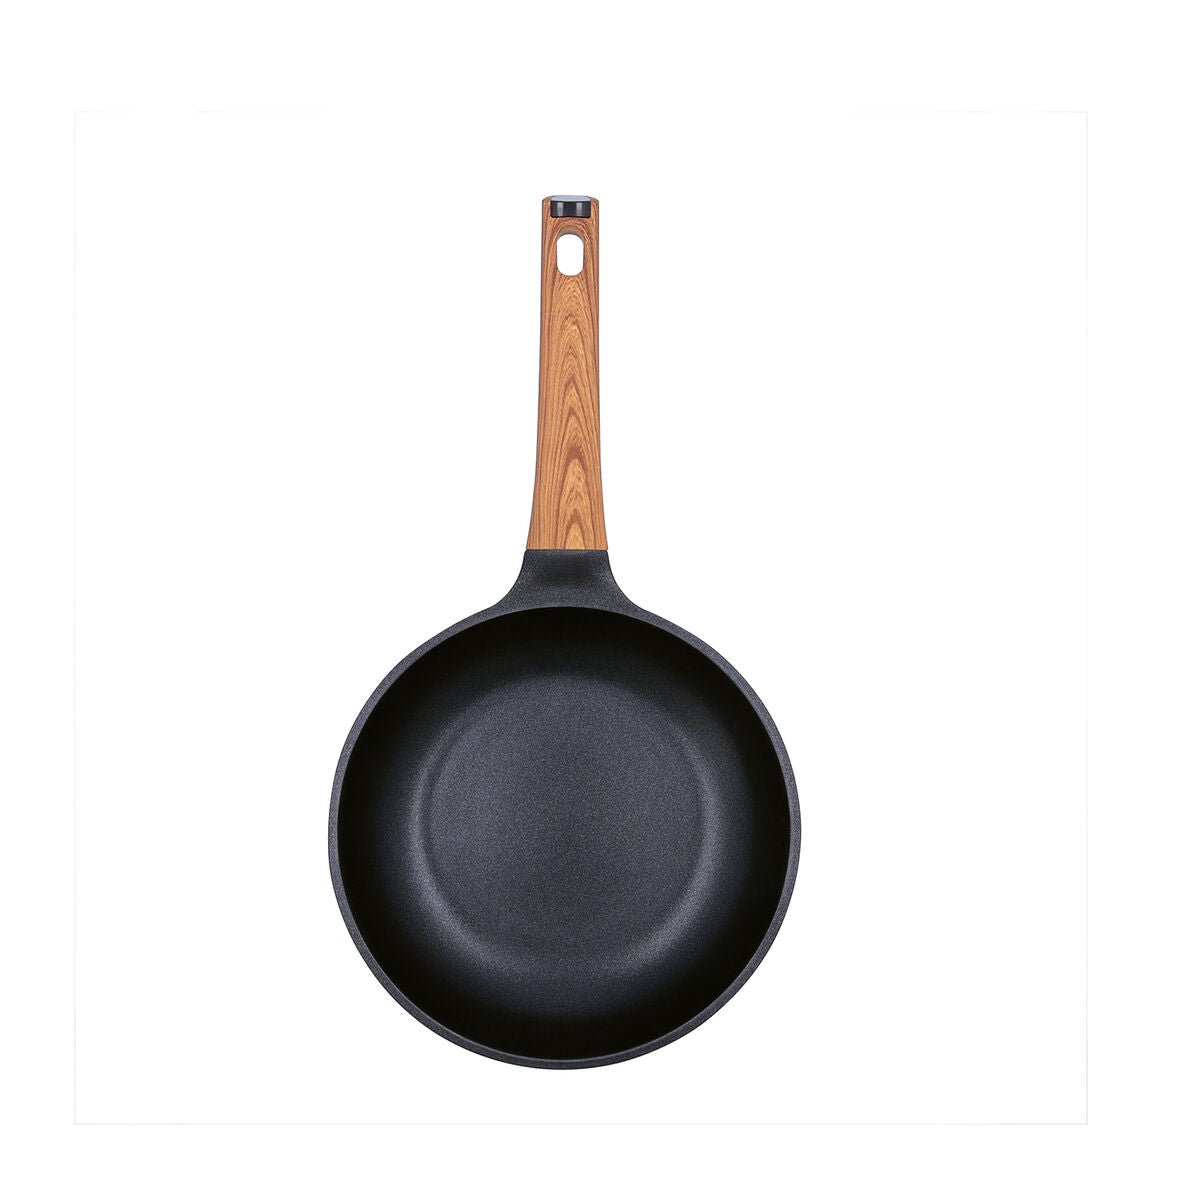 Pan quid karbon støpt aluminium svart 20 cm